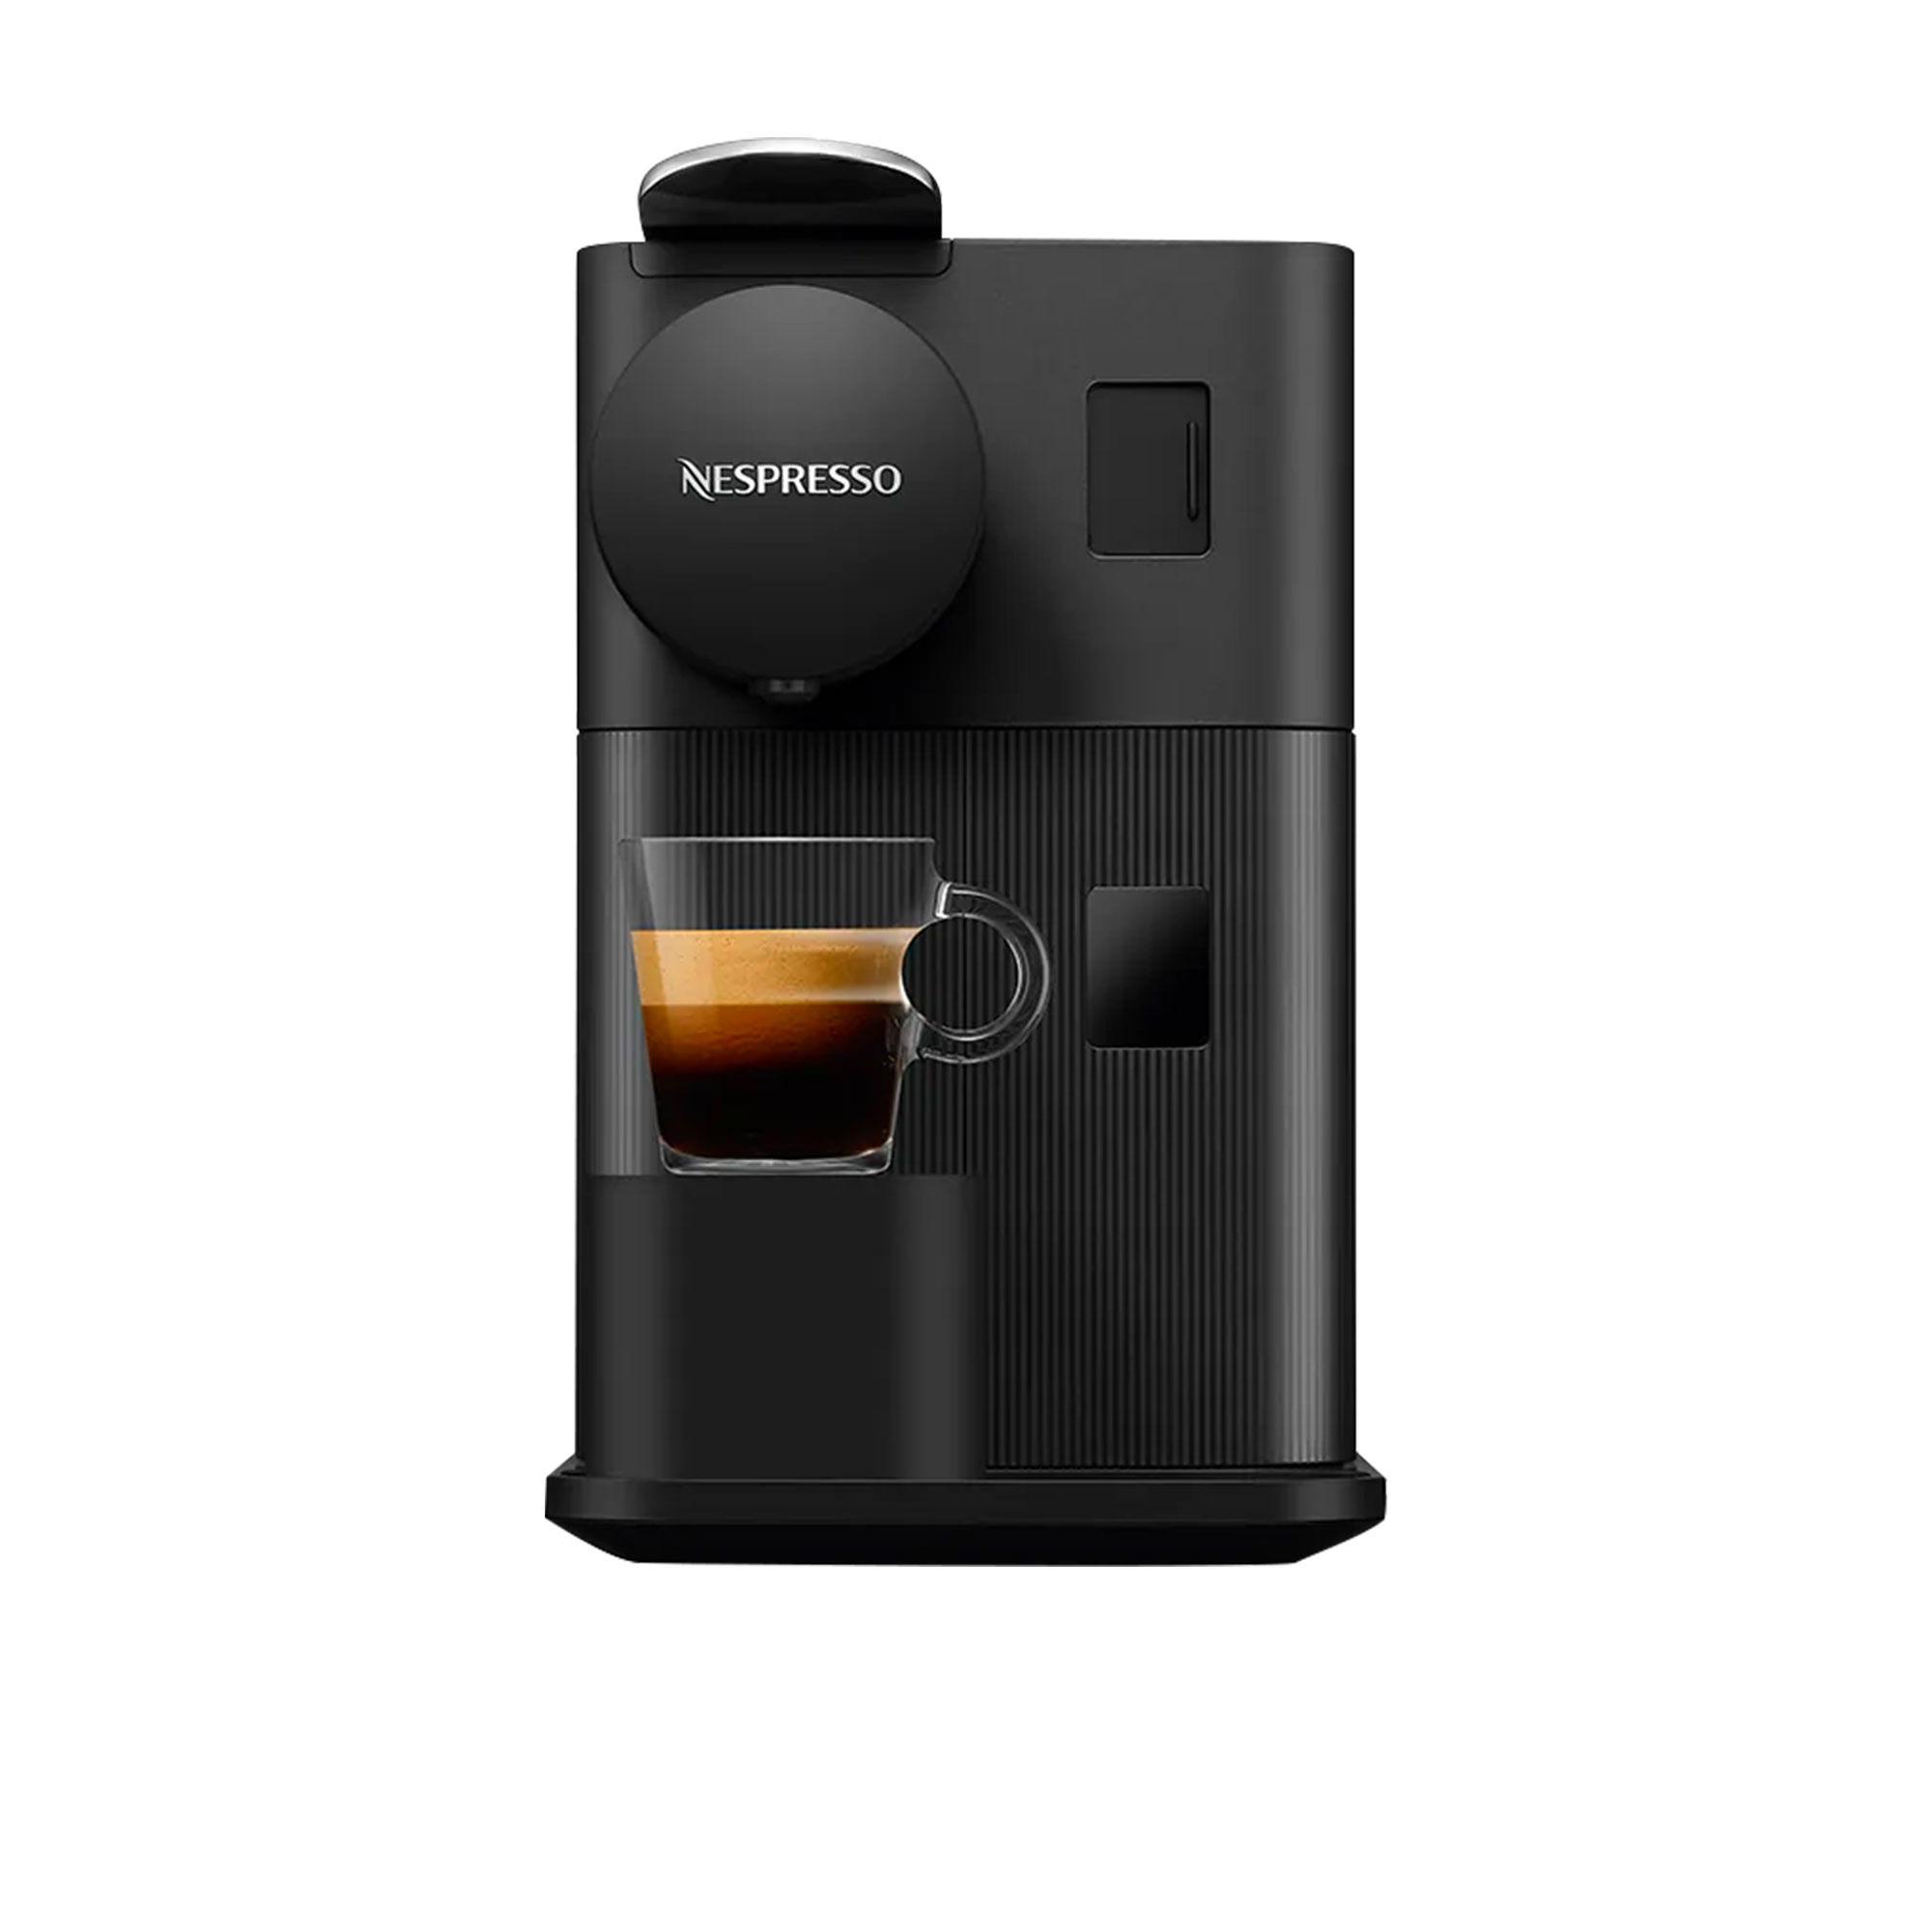 DeLonghi Nespresso Lattissima One EN510B Coffee Machine Black Image 2